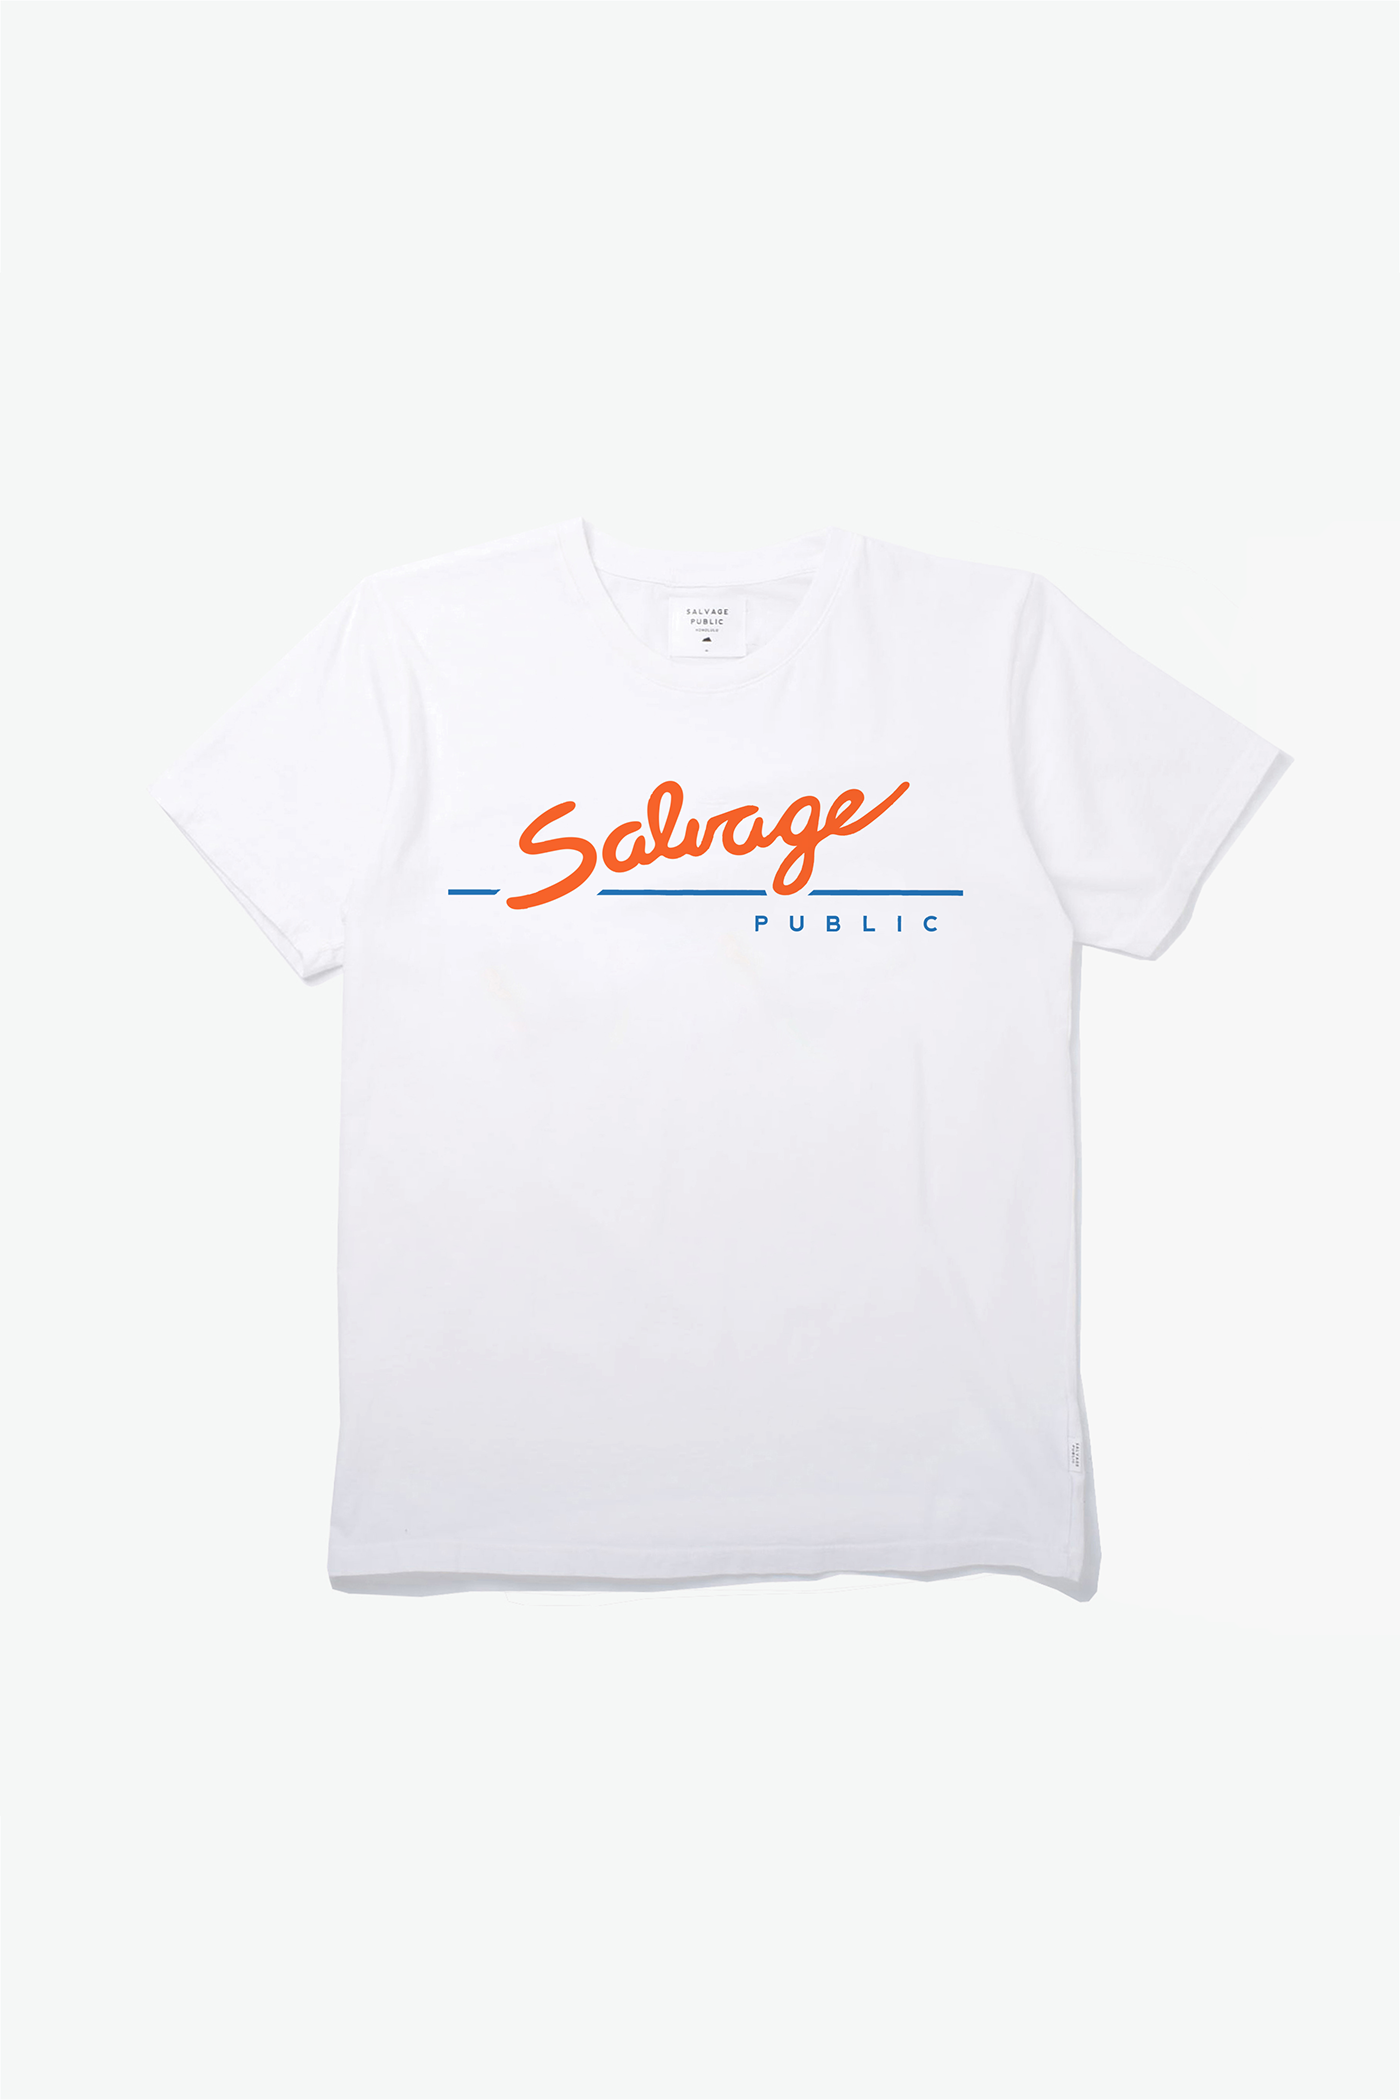 salvage public tshirt graphic graphic tee Mockup Clothing Fashion 